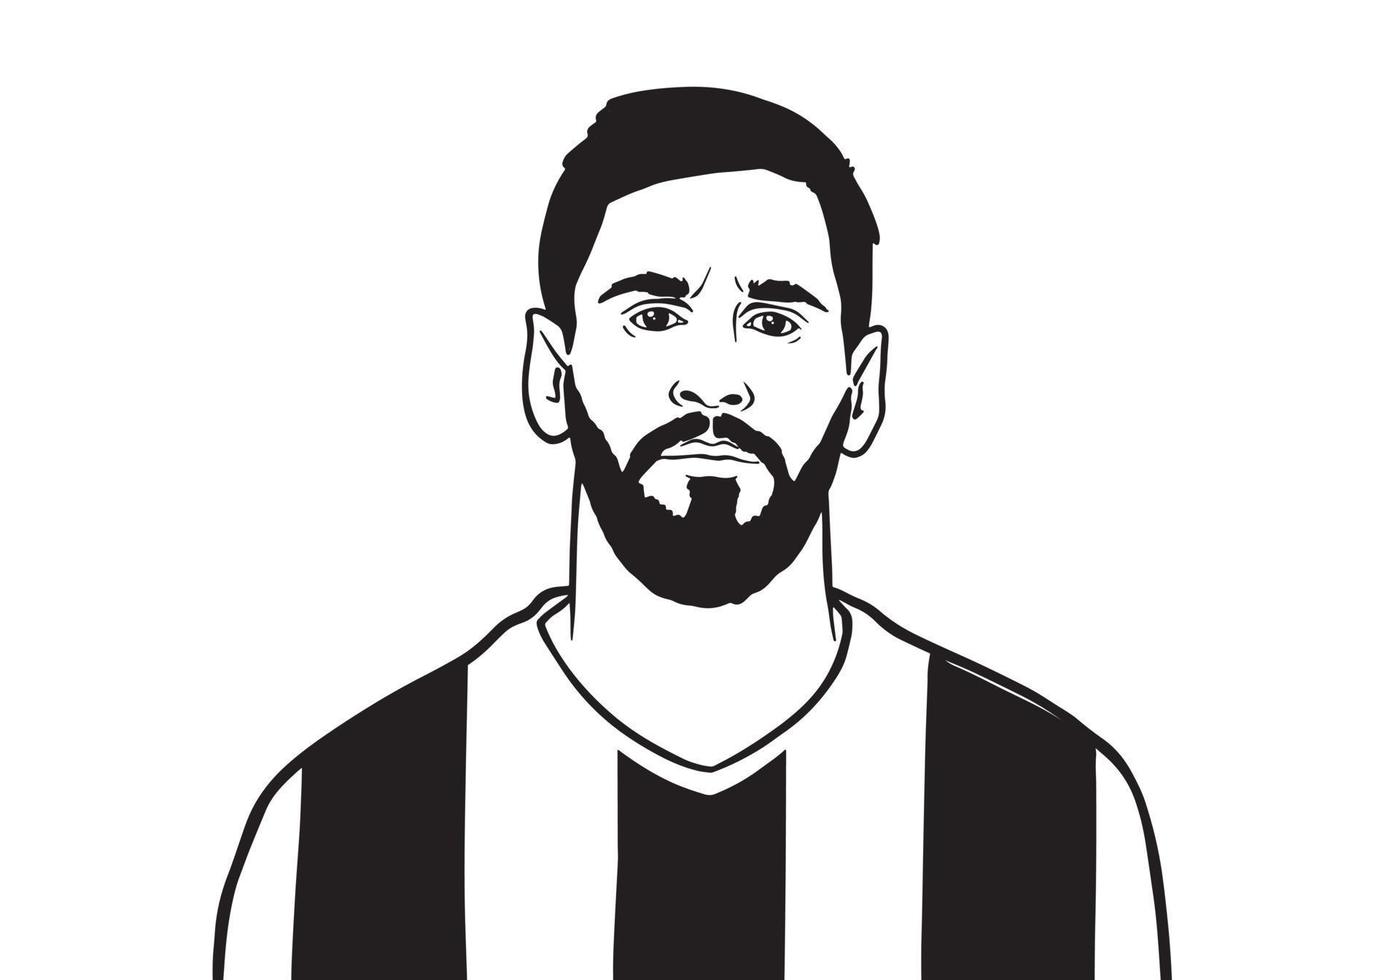 schwarz-weiße vektorporträtillustration des argentinischen fußballspielers paris saint germain leo messi vektor